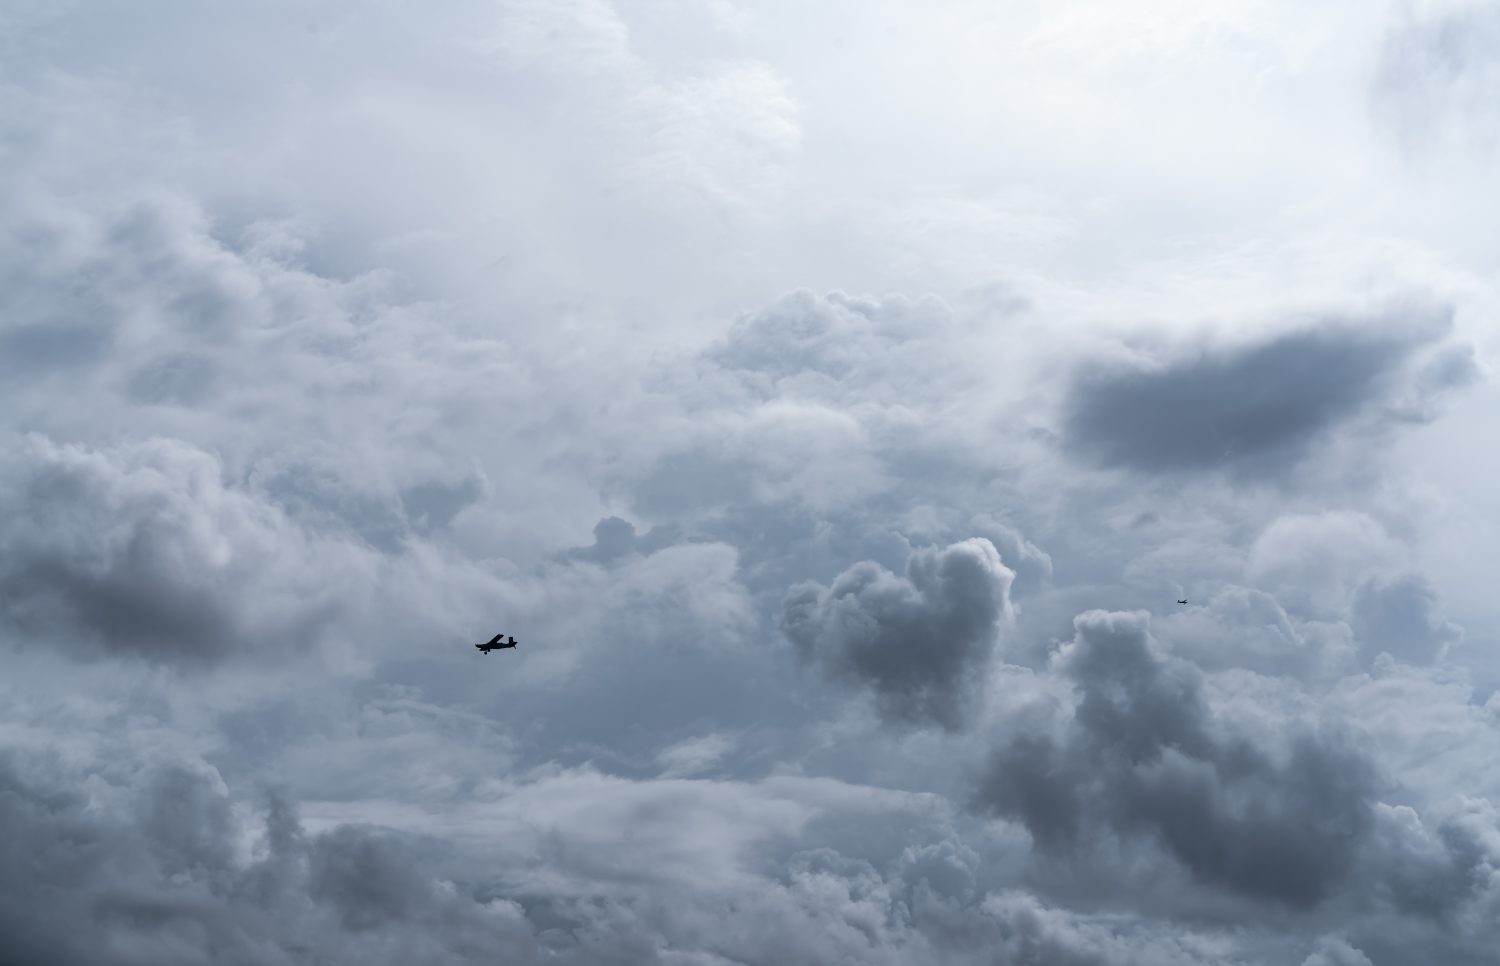 Piccolo aereo nel cielo nuvoloso per la produzione di pioggia.  Nuvole bianche e soffici con piccoli aerei per produrre piogge artificiali.  Due aerei che volano sul cielo nuvoloso.  Aereo agricolo per precipitazioni artificiali.